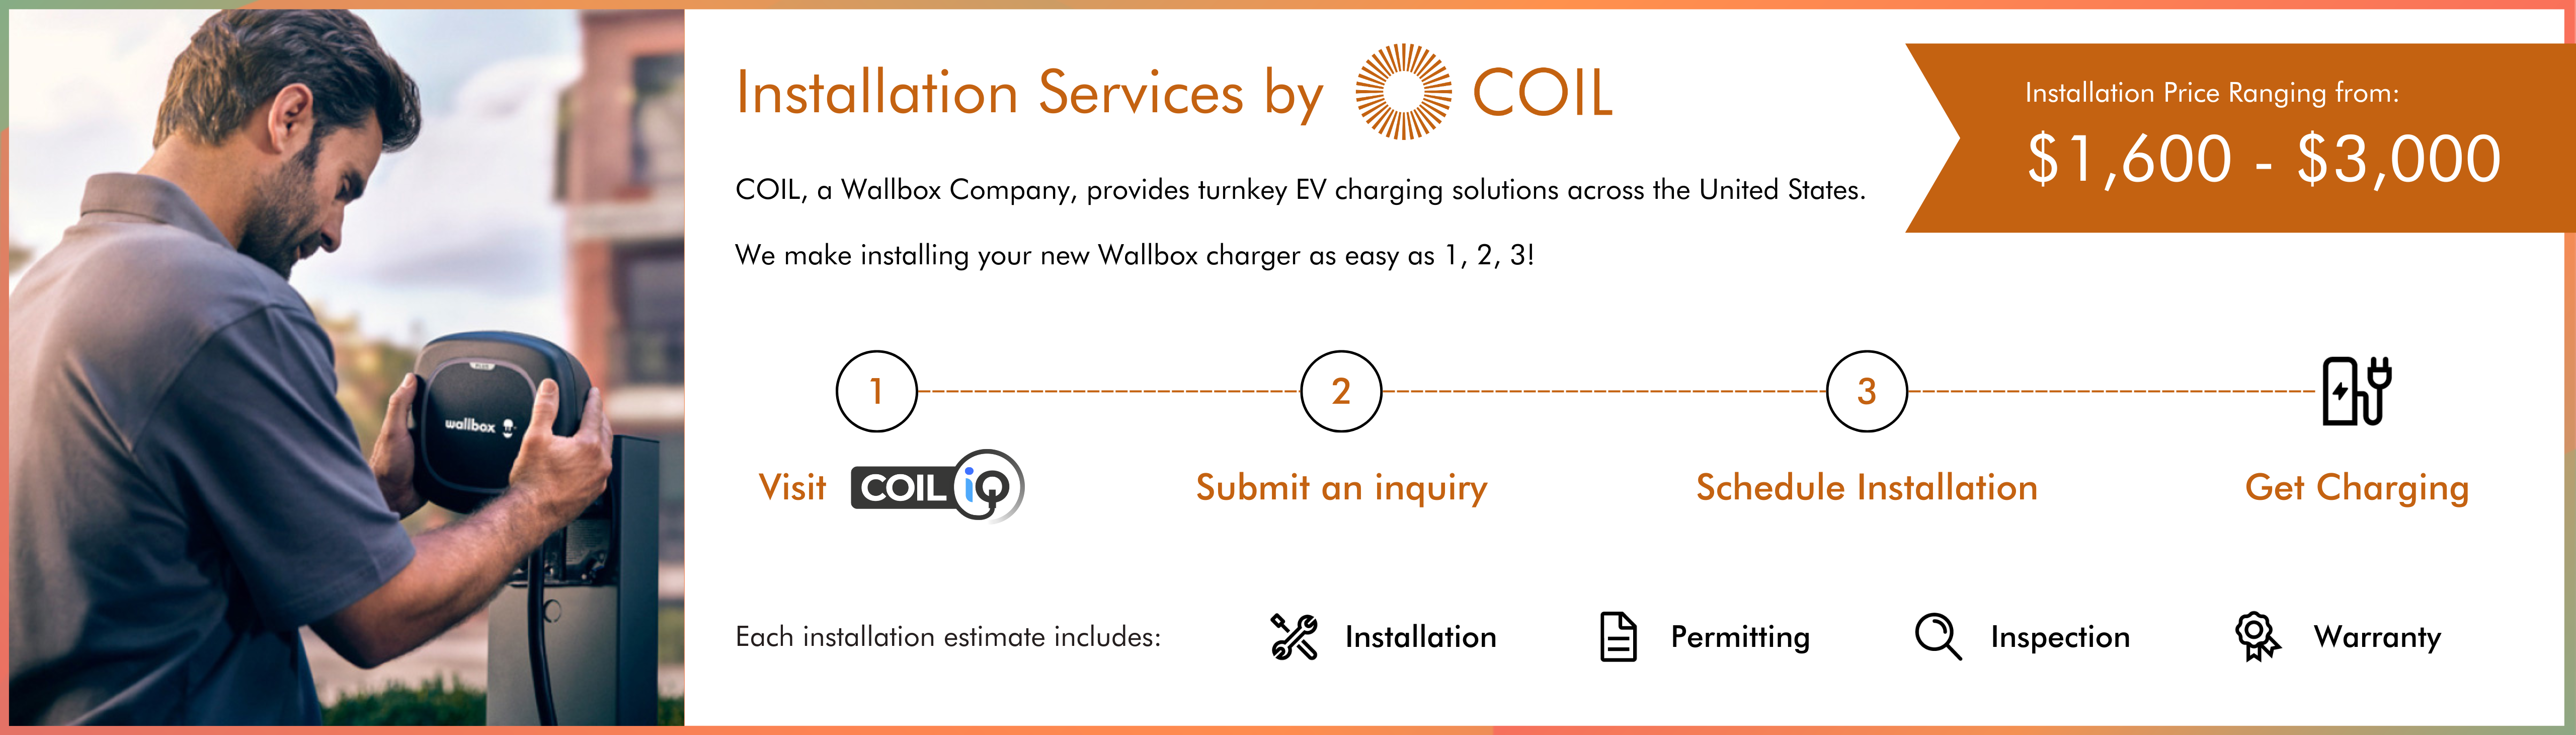 COIL_Installation_Services_Web_Design1